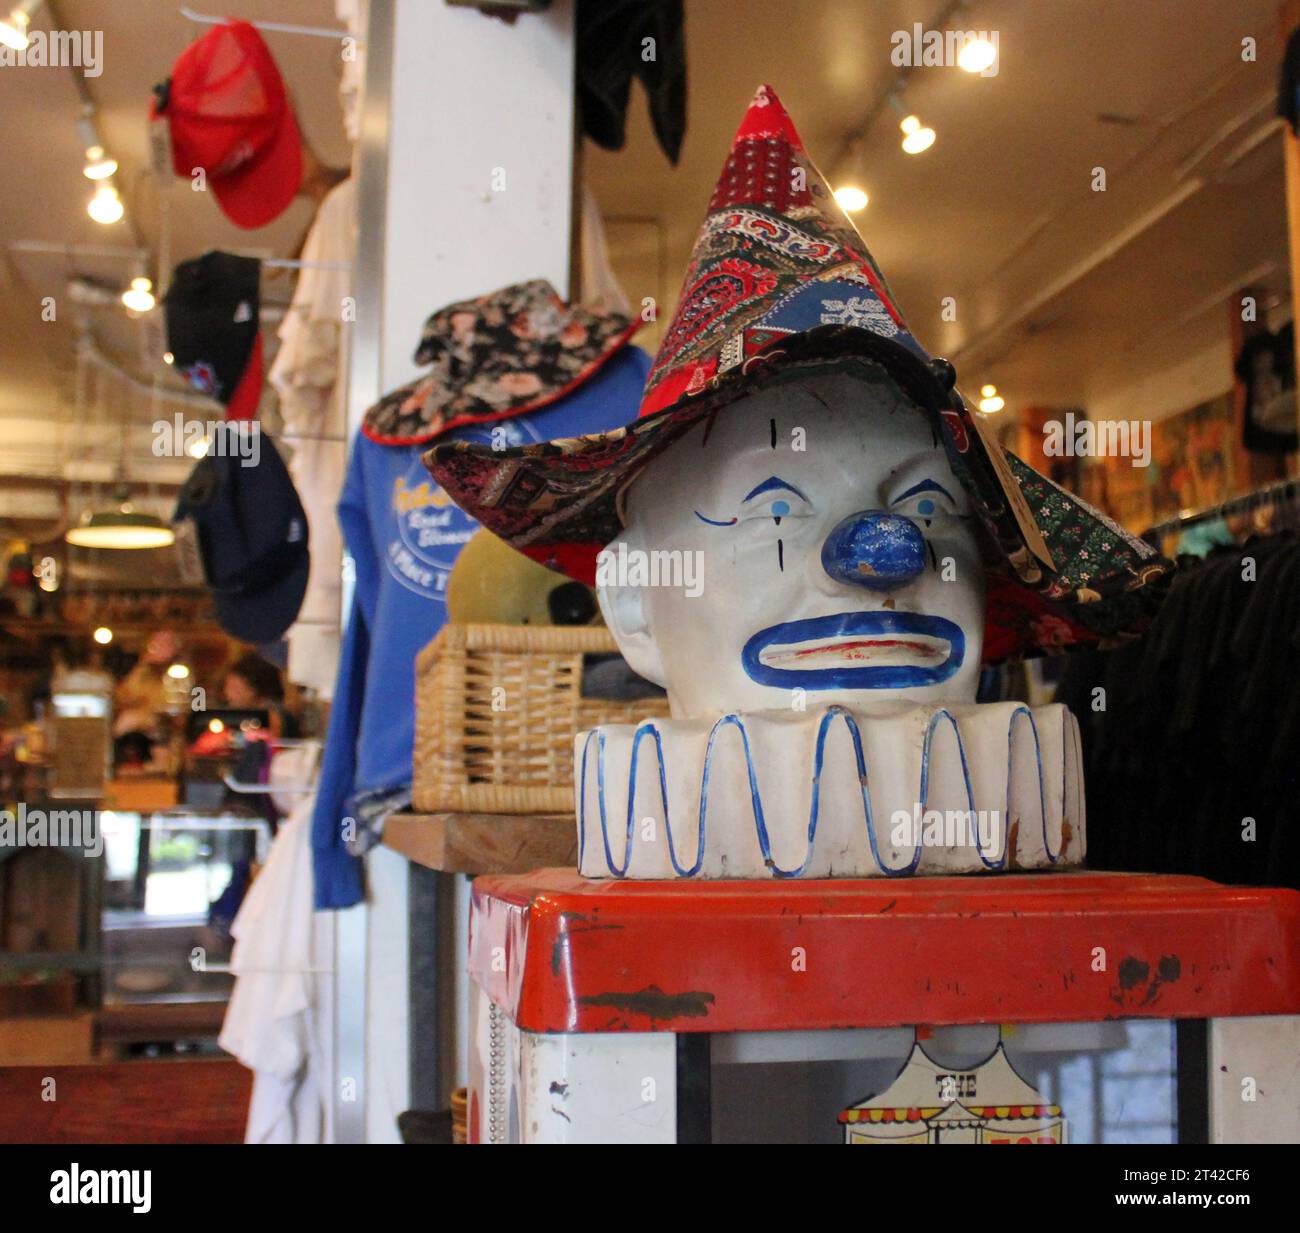 Une tête de clown isolée exposée dans un magasin, avec une composition légèrement excentrée Banque D'Images